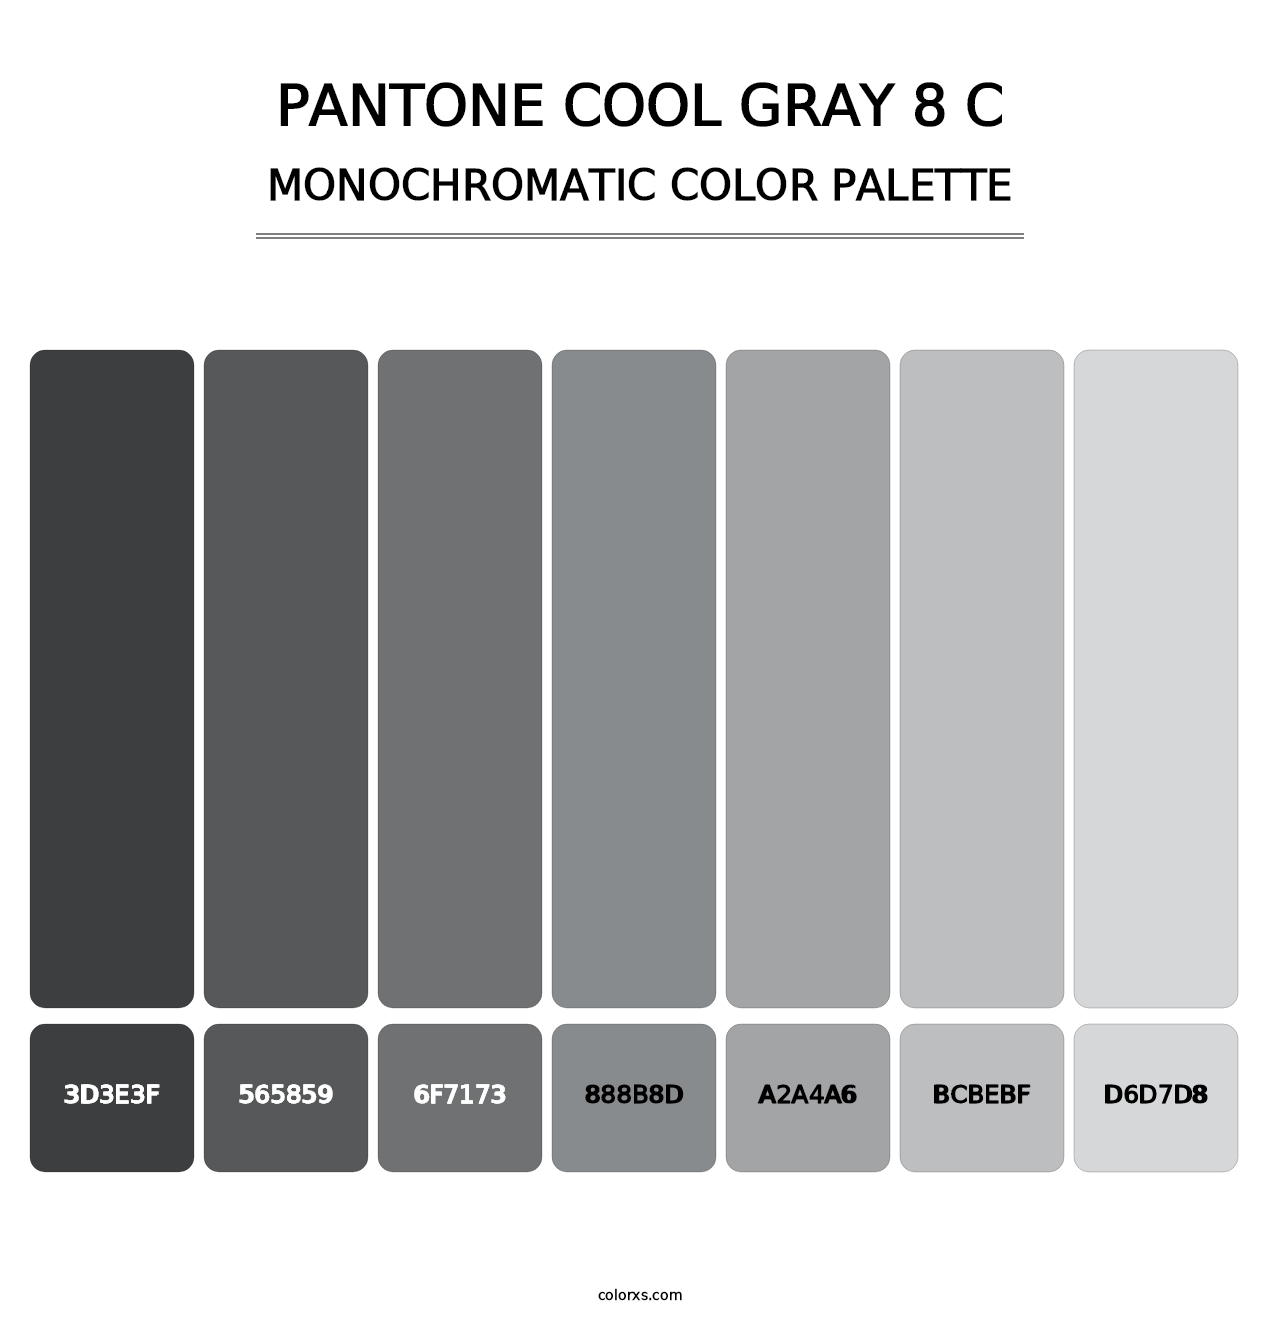 PANTONE Cool Gray 8 C - Monochromatic Color Palette